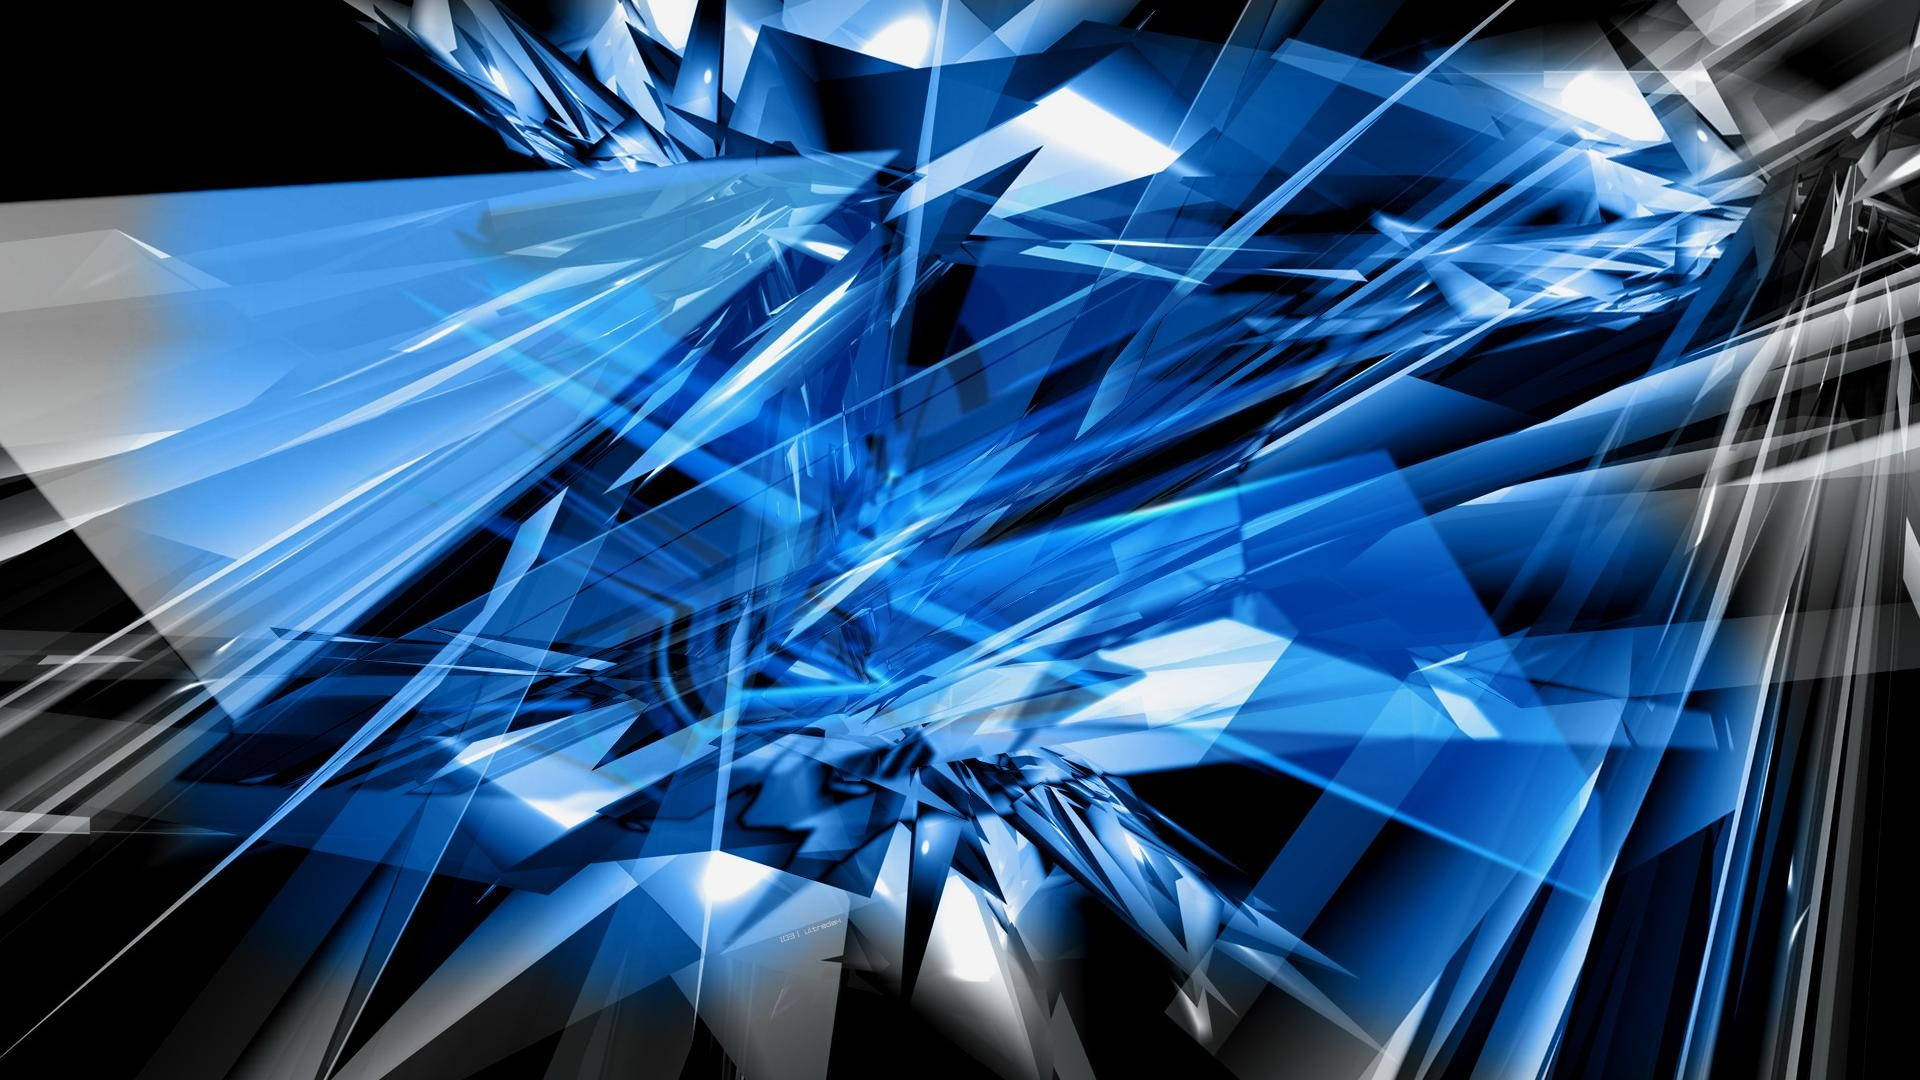 Blue Glass Shards Hd Design Wallpaper